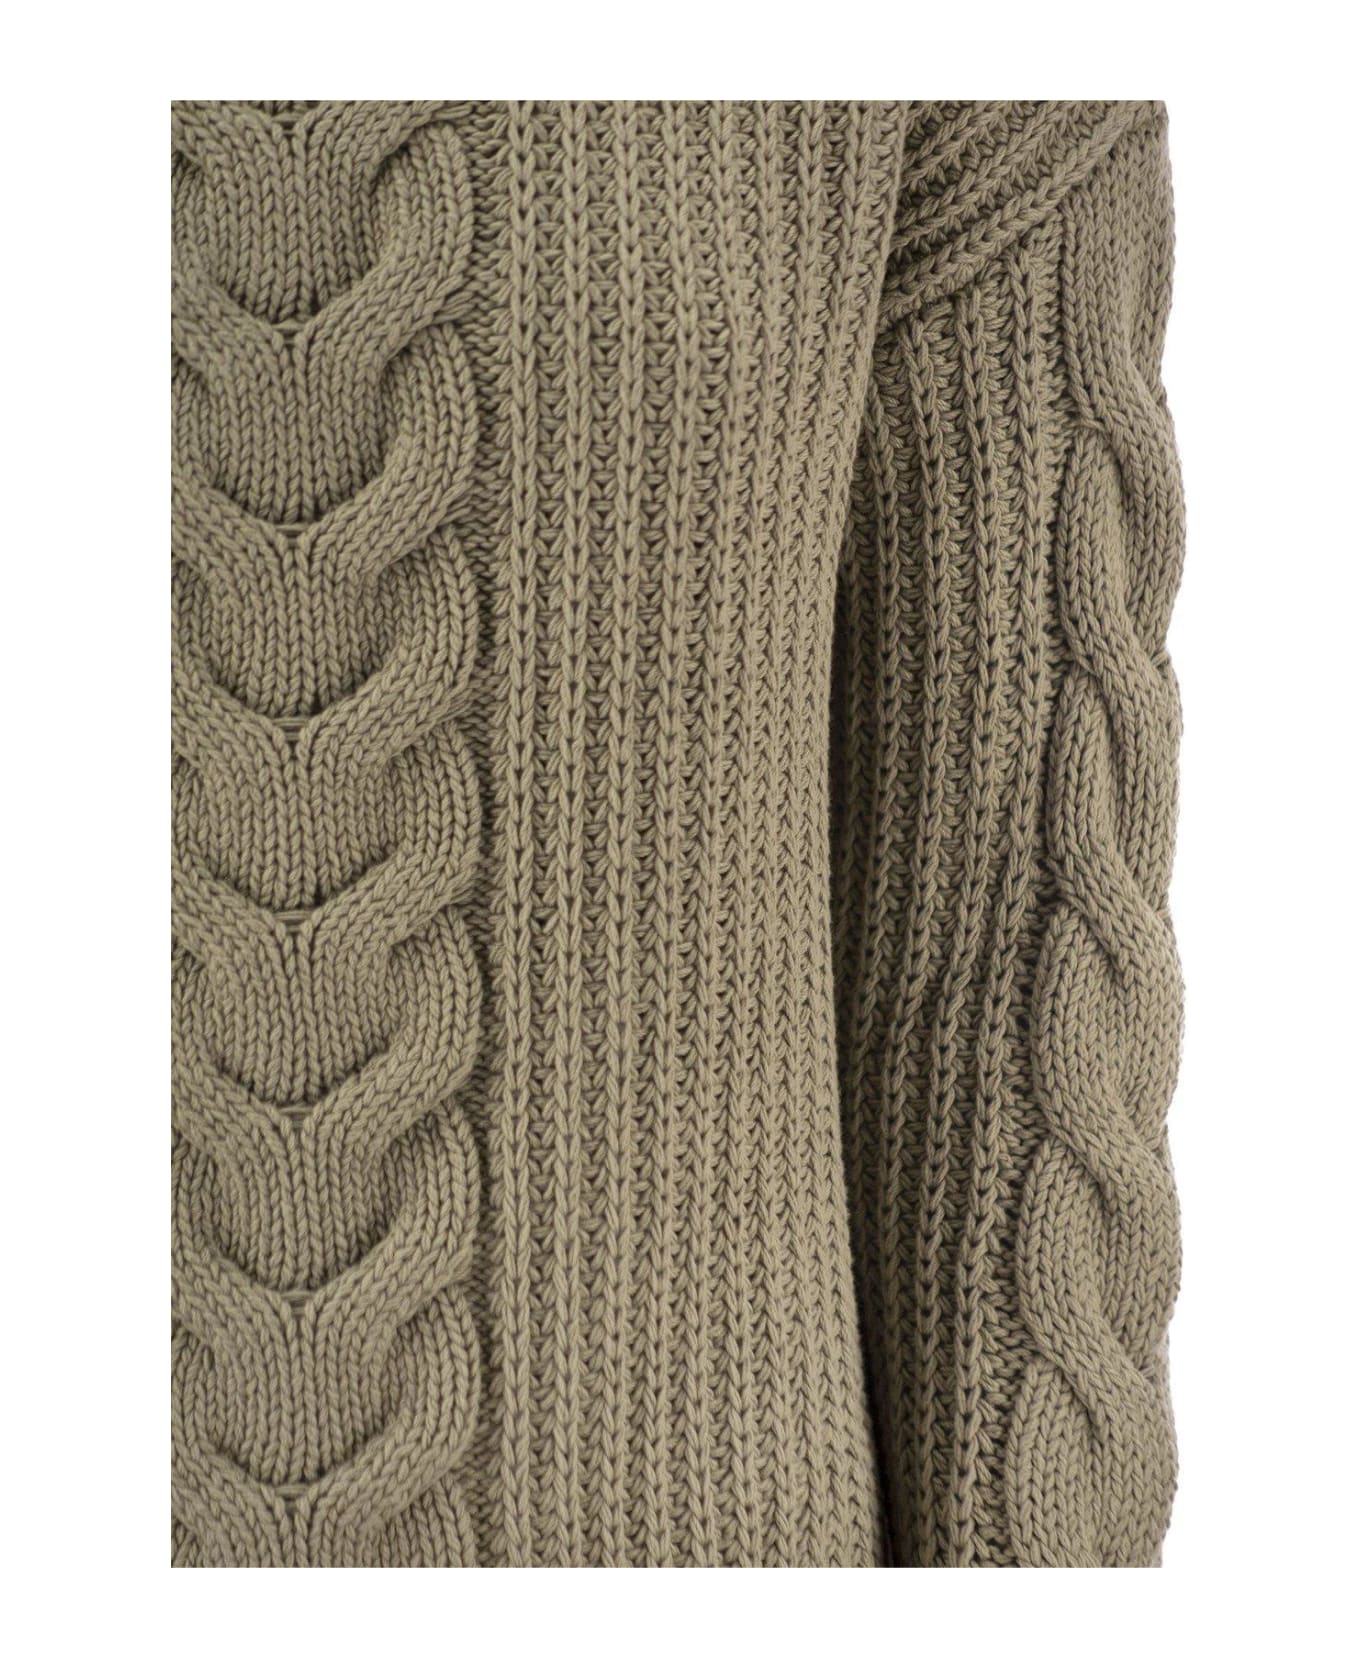 Max Mara Crewneck Knit Sweaters - Kaki ニットウェア